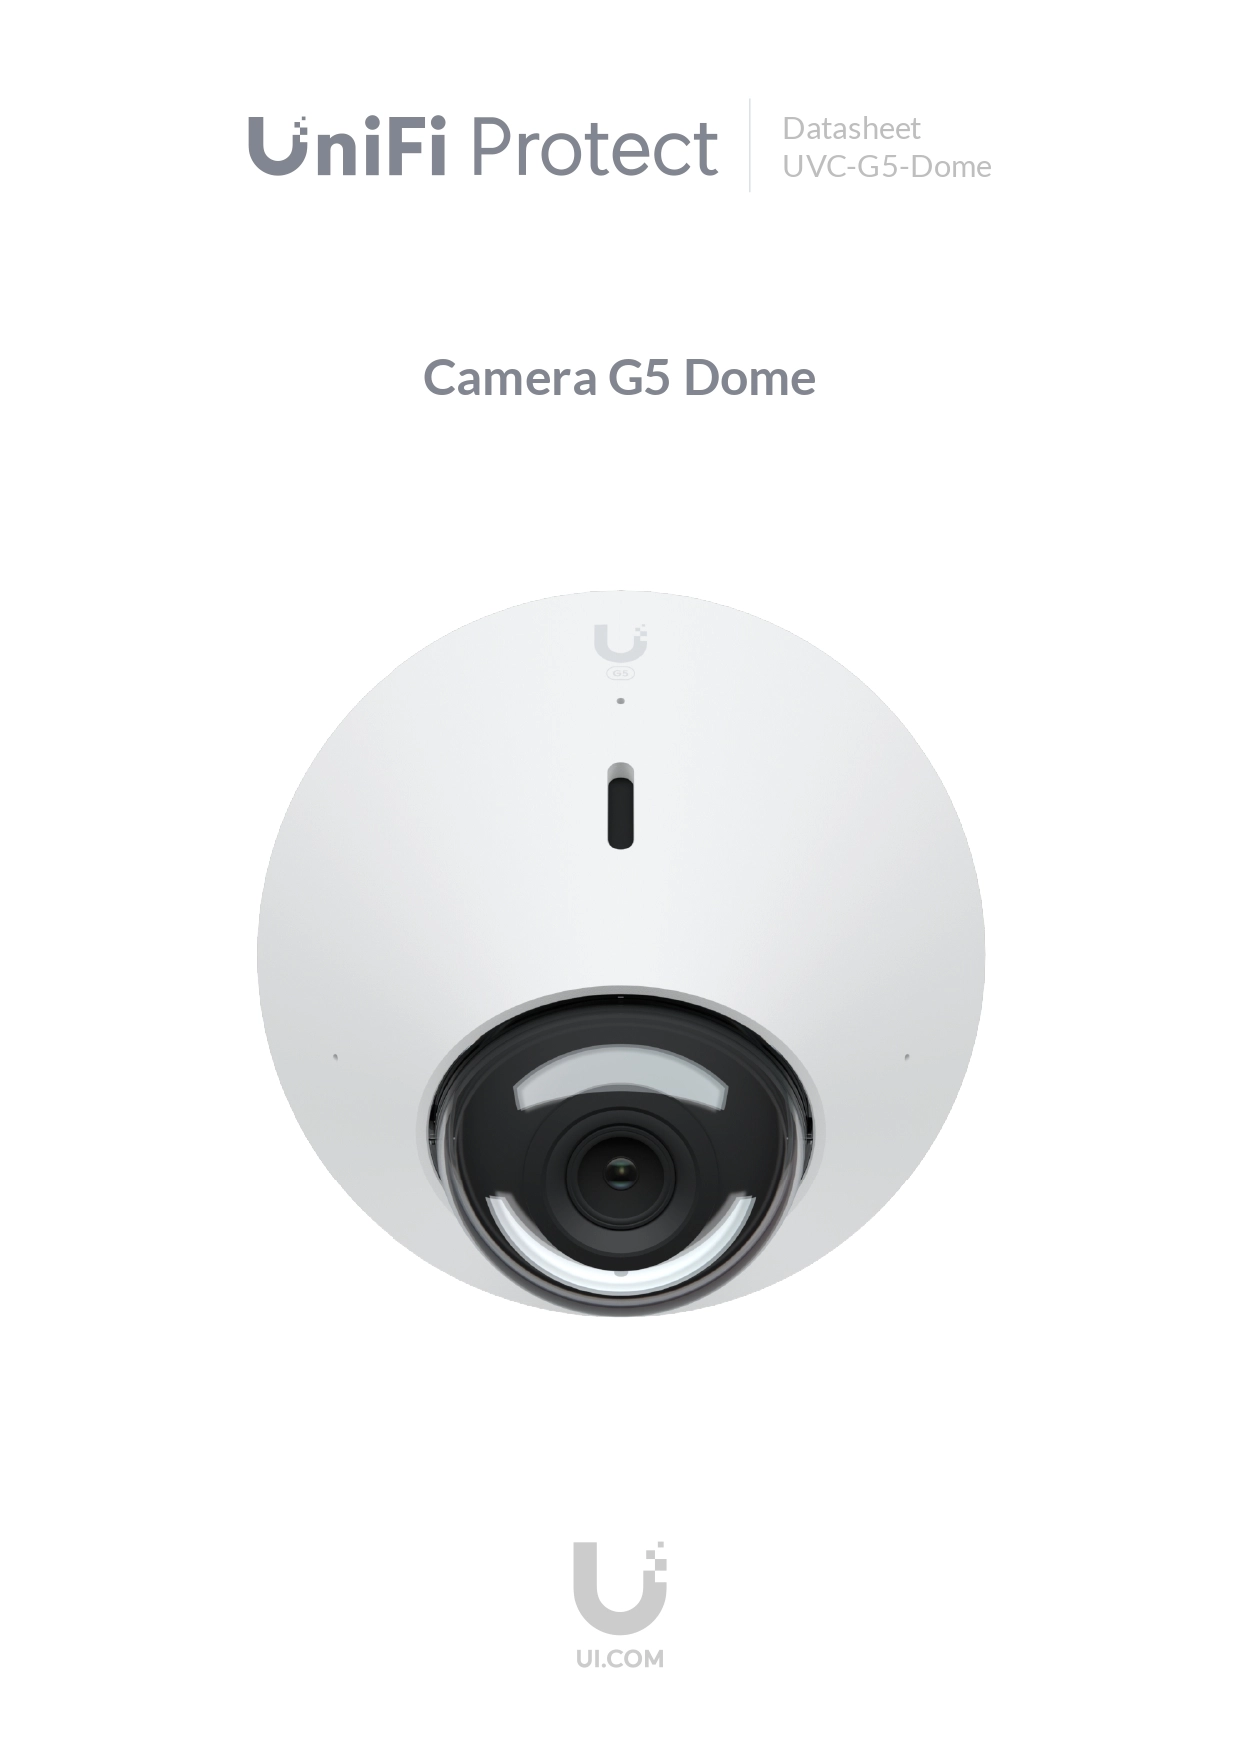 UVC-G5-Dome | UniFi Dome Camera G5 2K HD